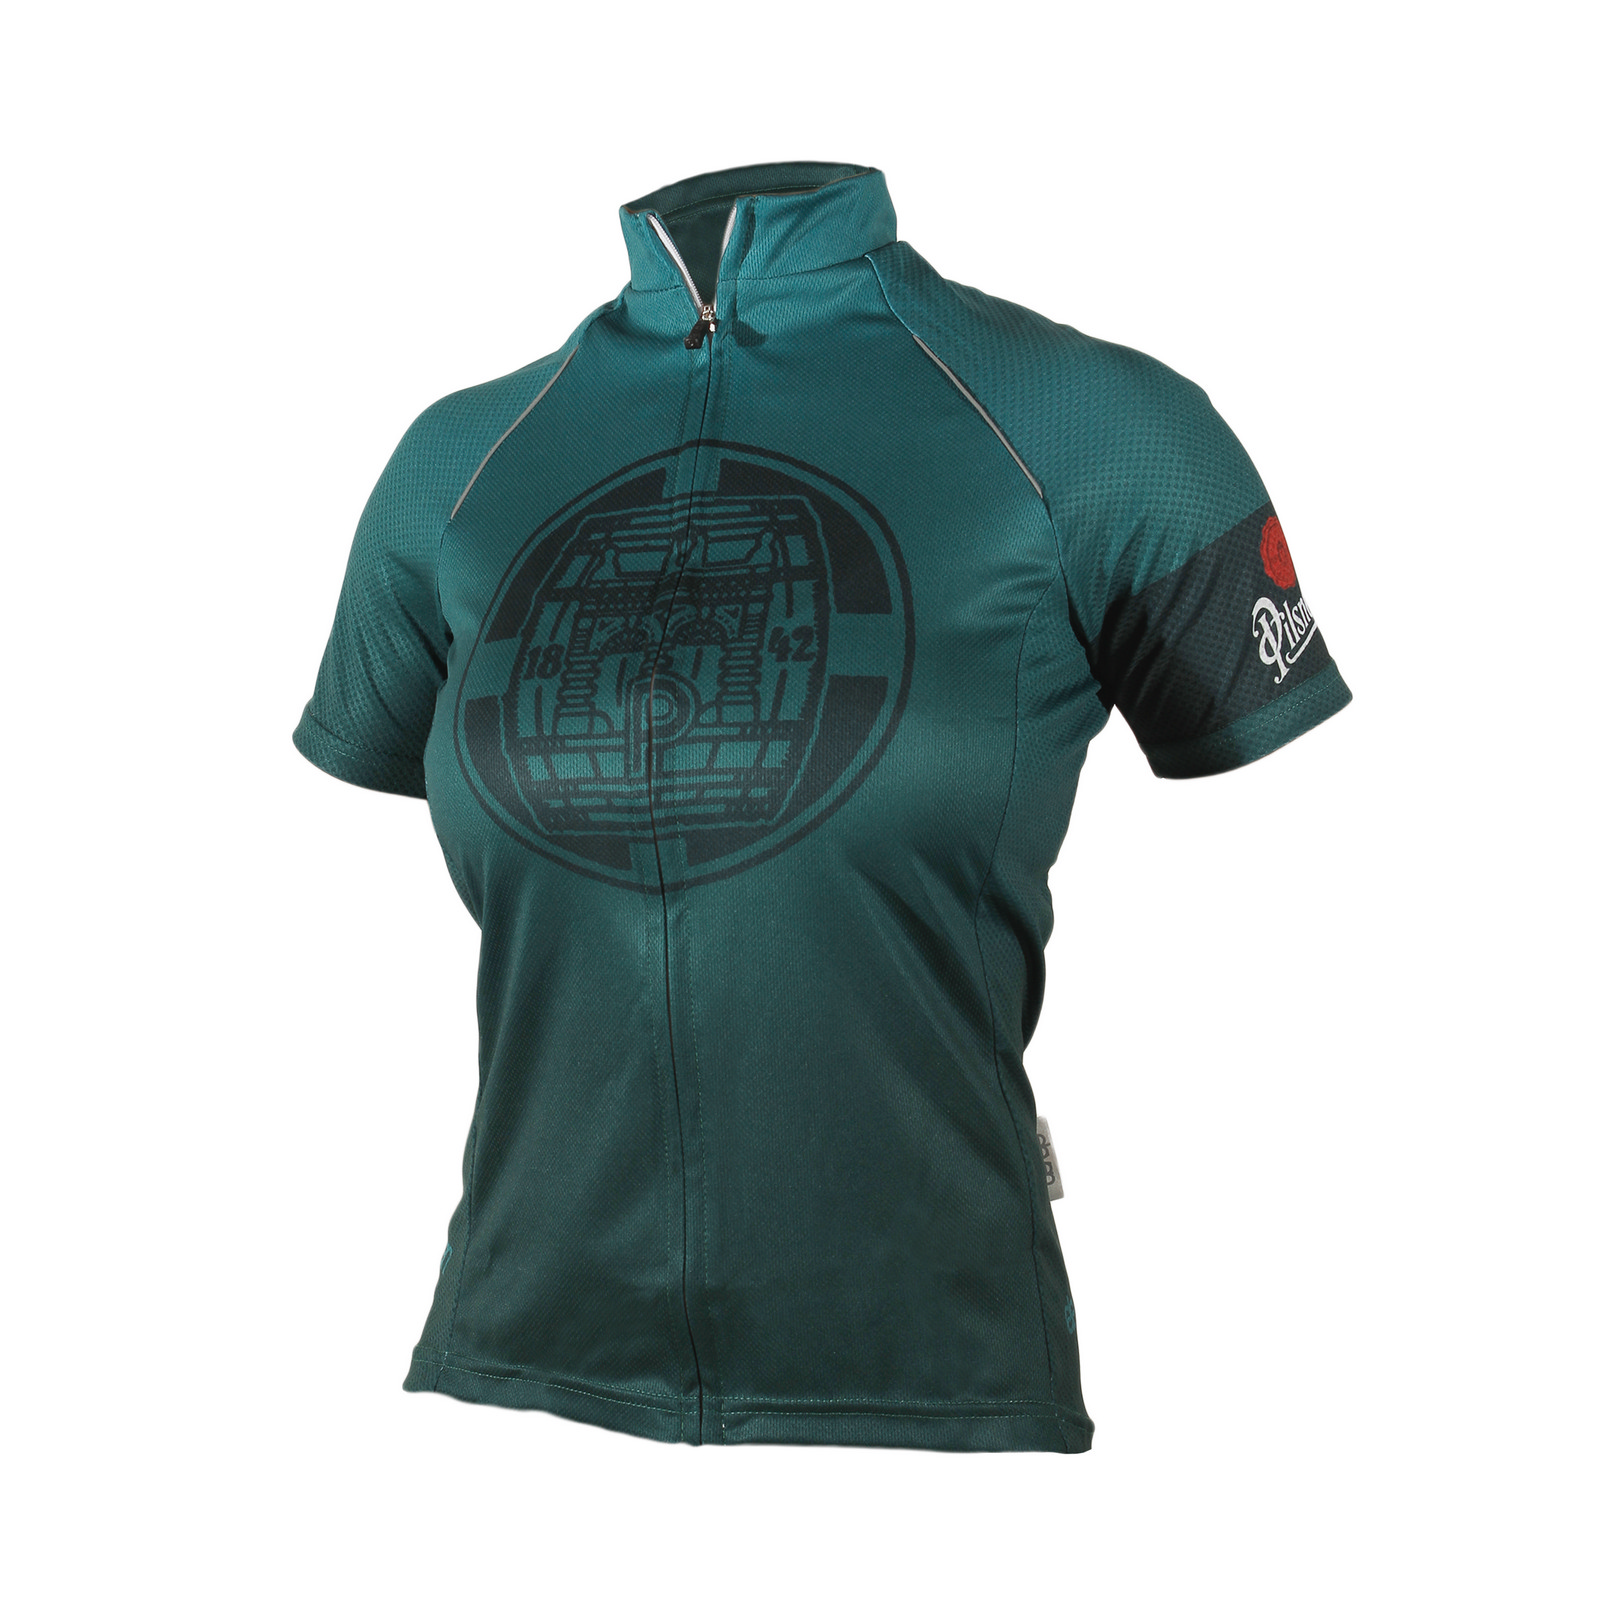 Dámský cyklistický dres Pilsner Urquell tmavě zelený